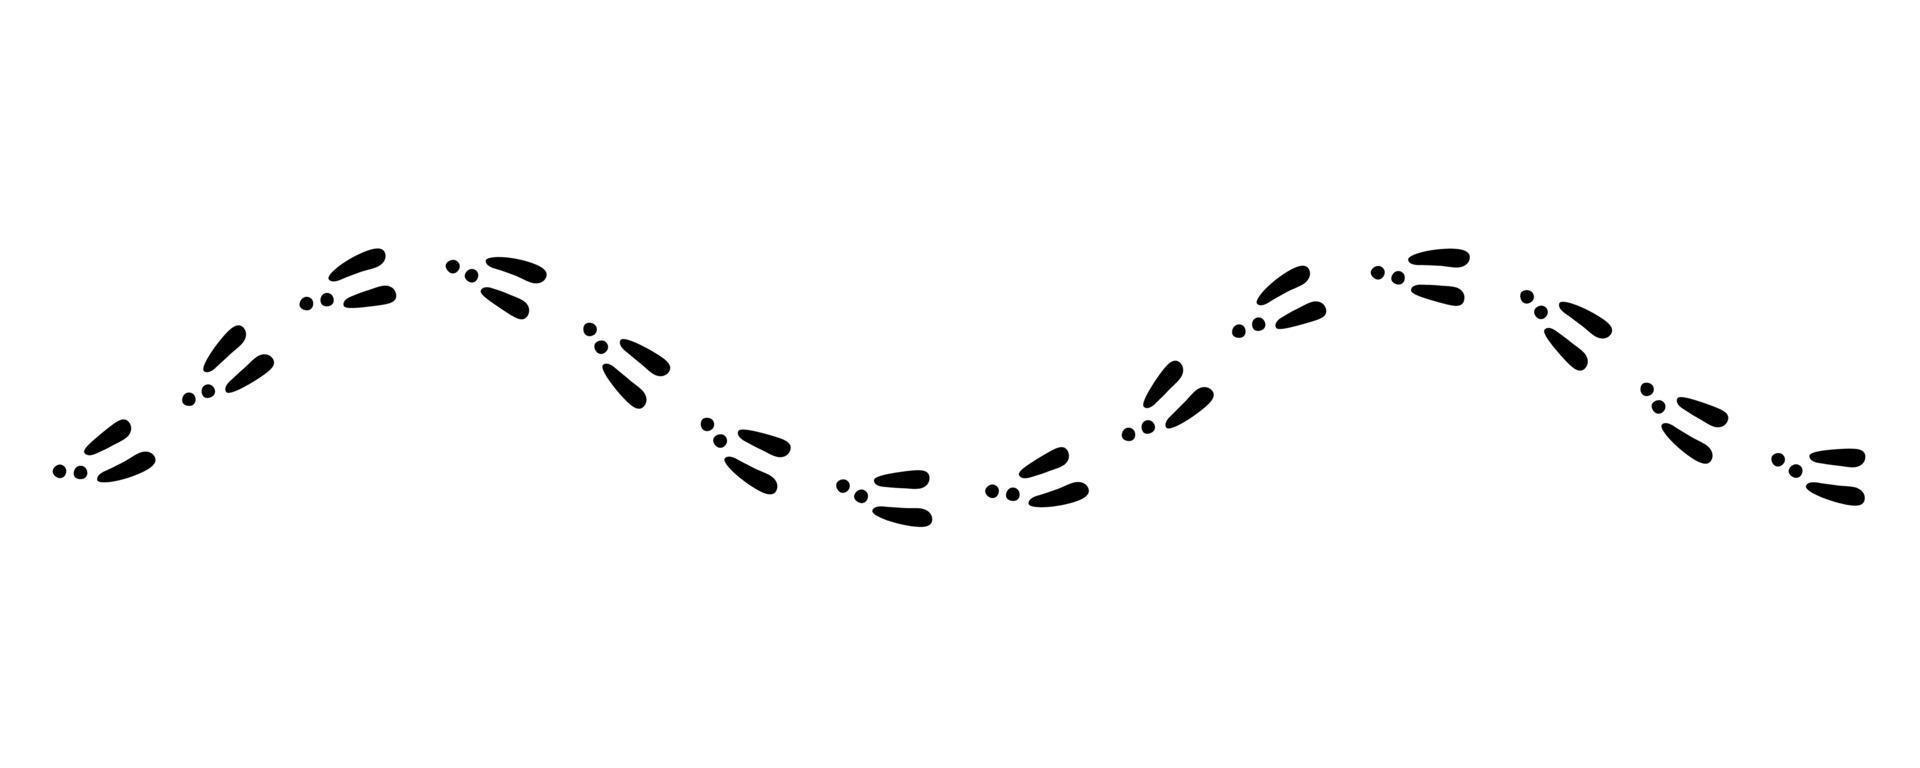 Kaninchen- oder Hasenspur. Hasenfußabdrücke auf Schnee. Hasenpfote Schritte. Hasenschritte verfolgen. Vektor-Illustration isoliert auf weißem Hintergrund im flachen Stil vektor